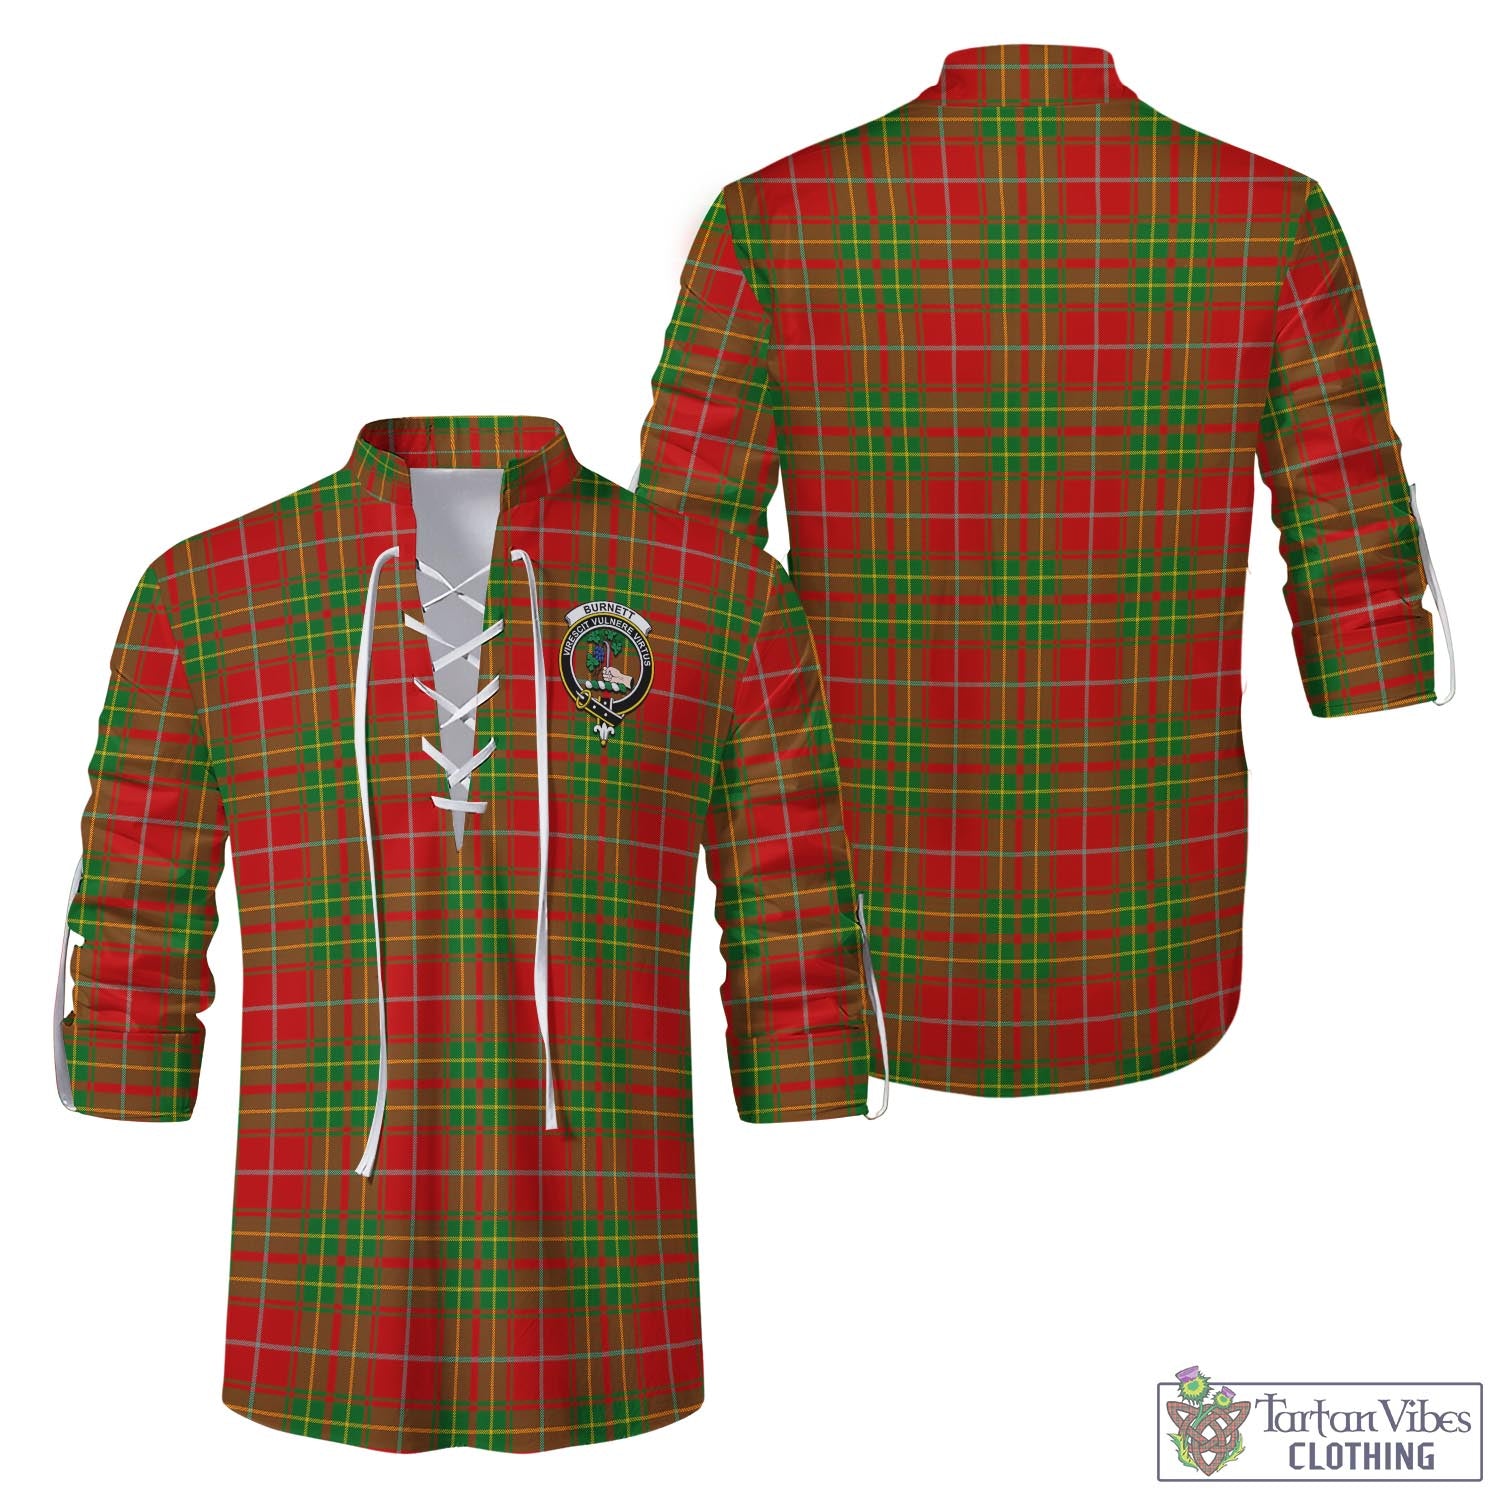 Tartan Vibes Clothing Burnett Ancient Tartan Men's Scottish Traditional Jacobite Ghillie Kilt Shirt with Family Crest